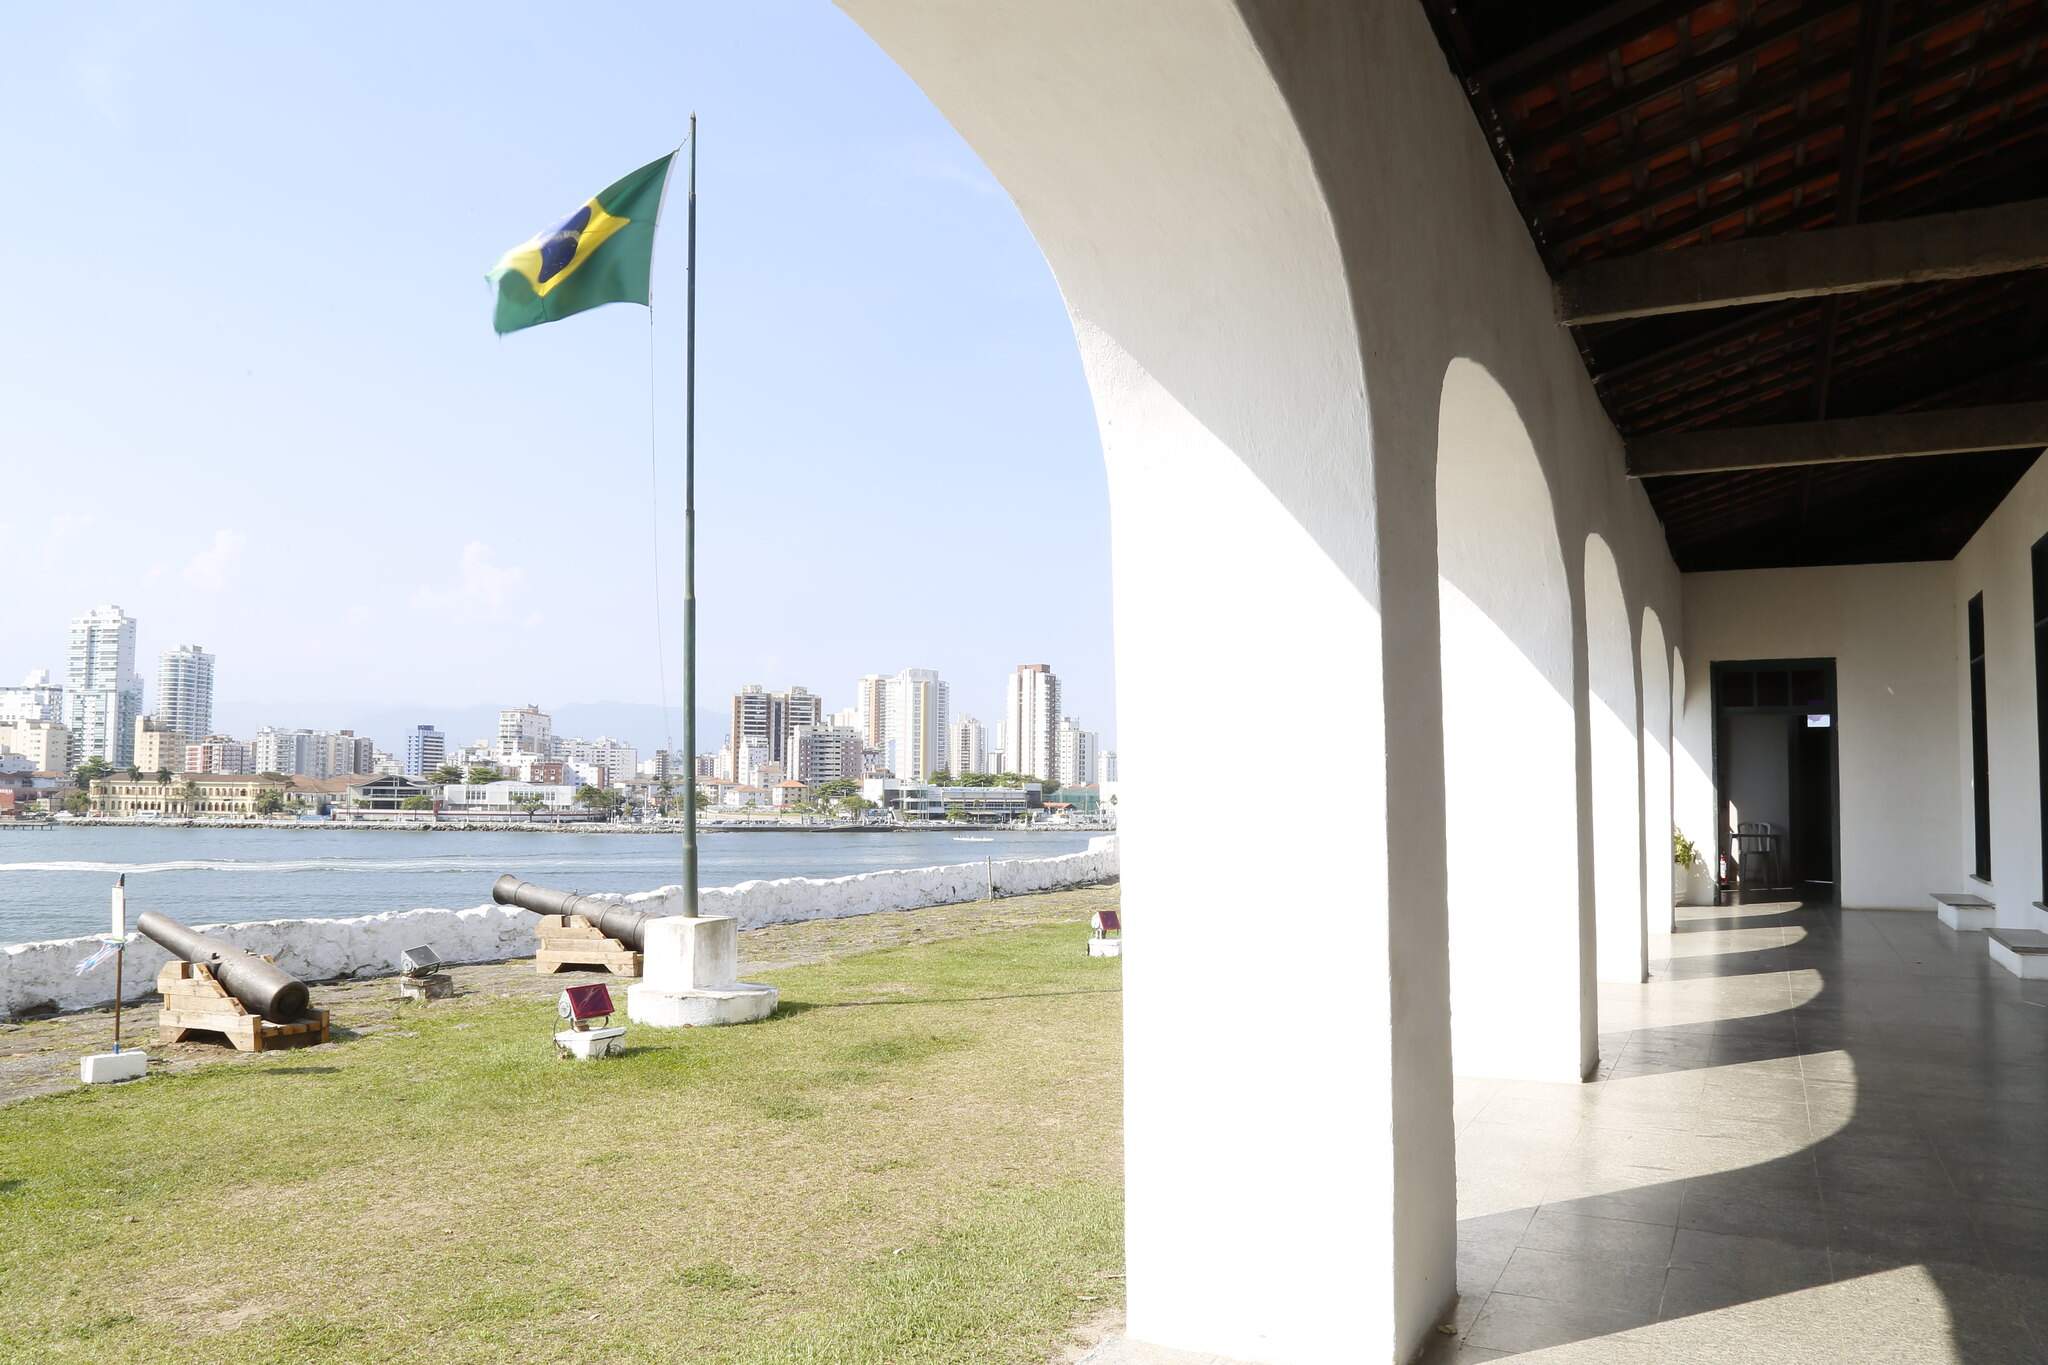 O monumento foi construído no século XVI para proteção do litoral paulista